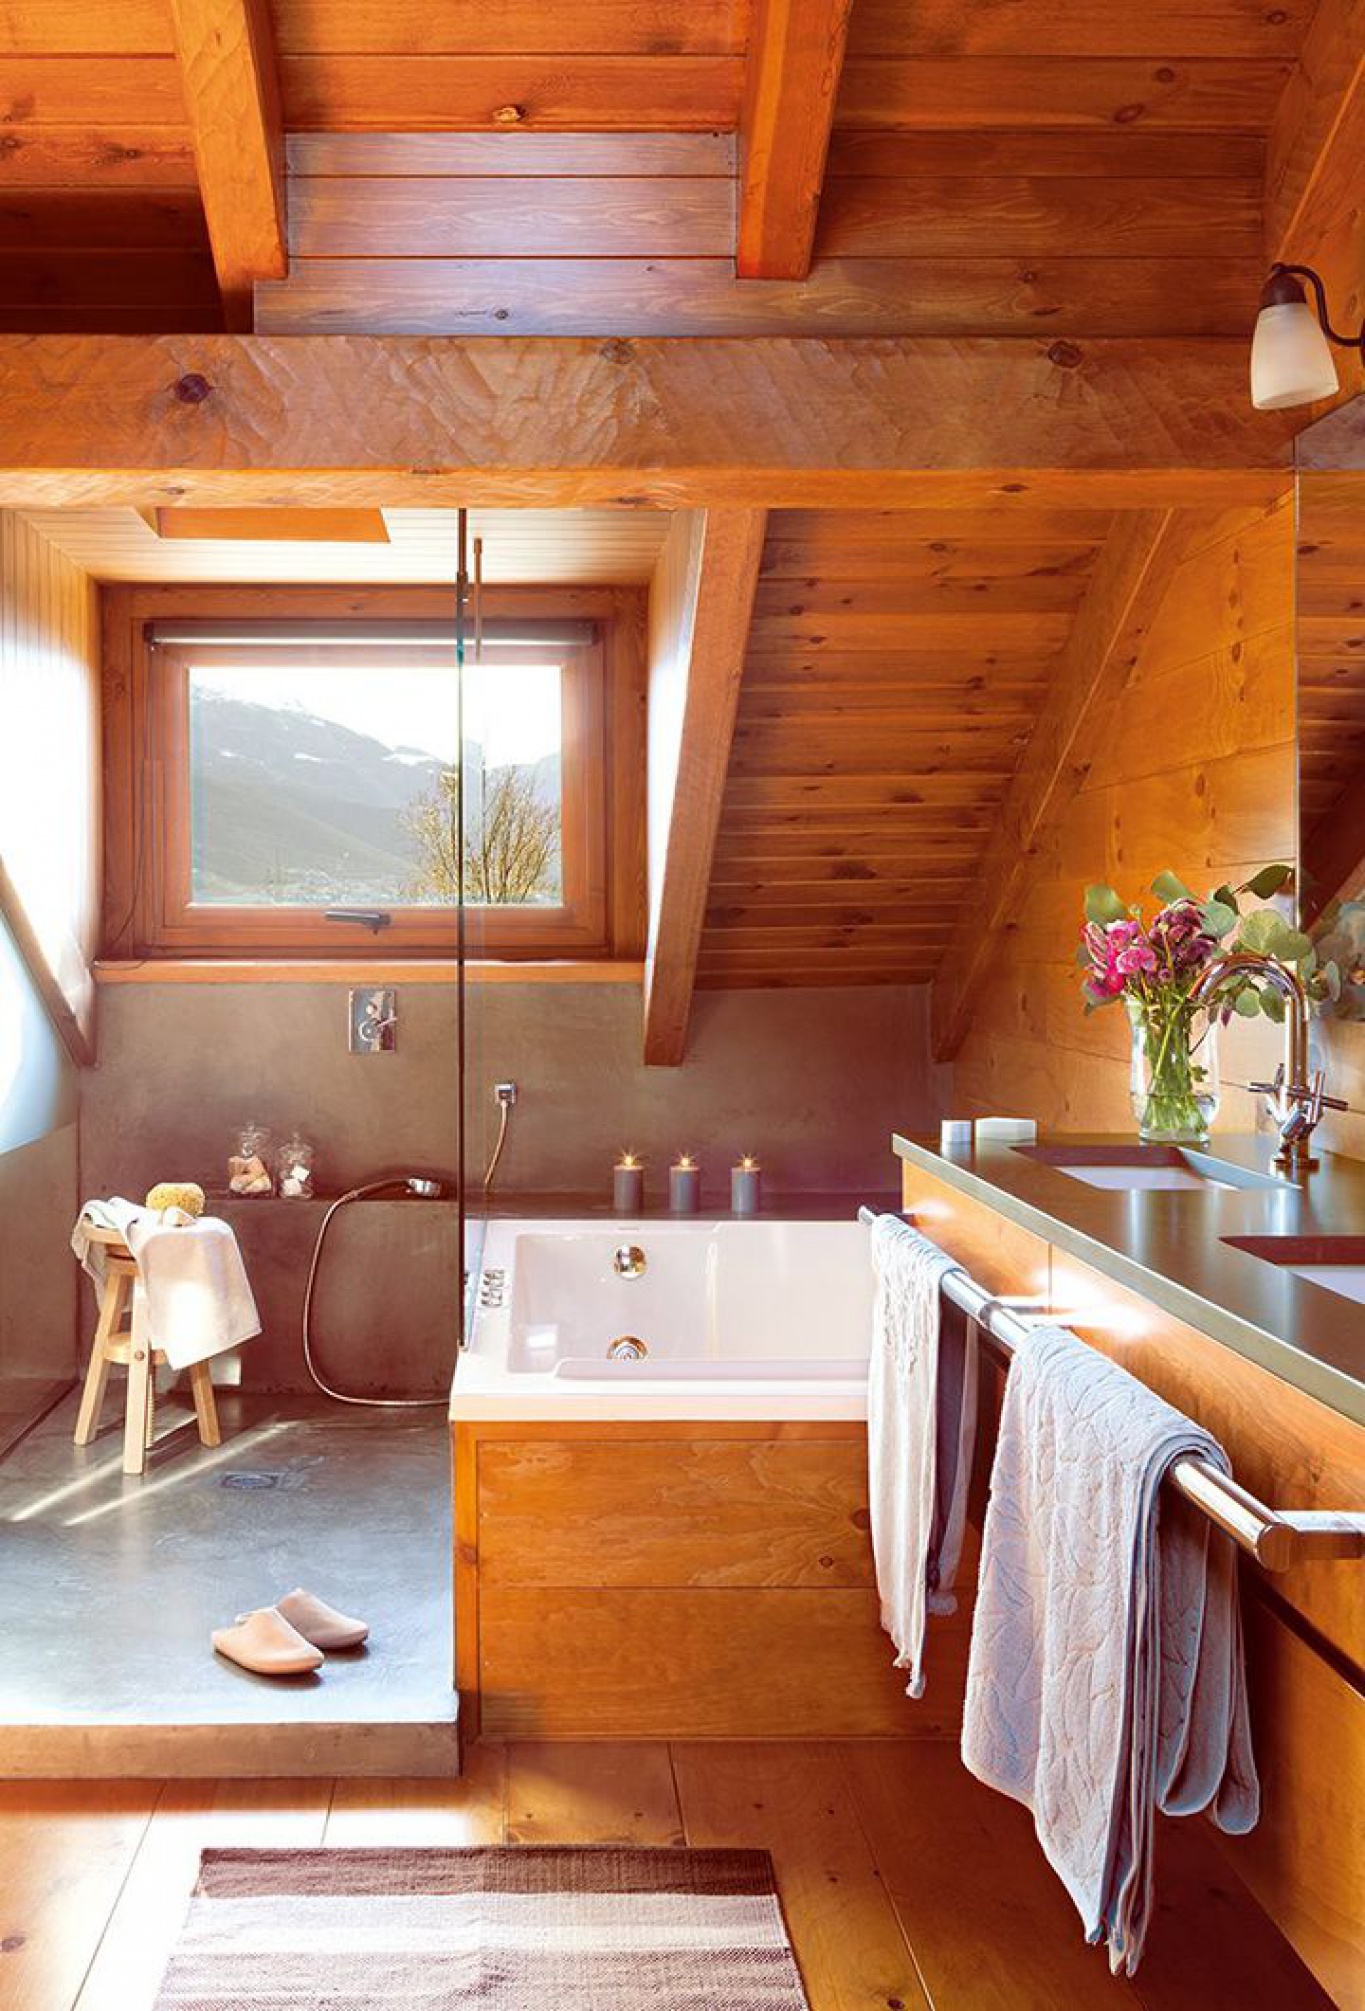 Một phòng tắm trên tầng áp mái với phong cách mộc mạc, ấm áp vô cùng. Nội thất được ốp bằng gỗ màu hổ phách, khung cửa hình chữ nhật nhỏ xinh nhìn ra khung cảnh núi non thơ mộng bên ngoài.